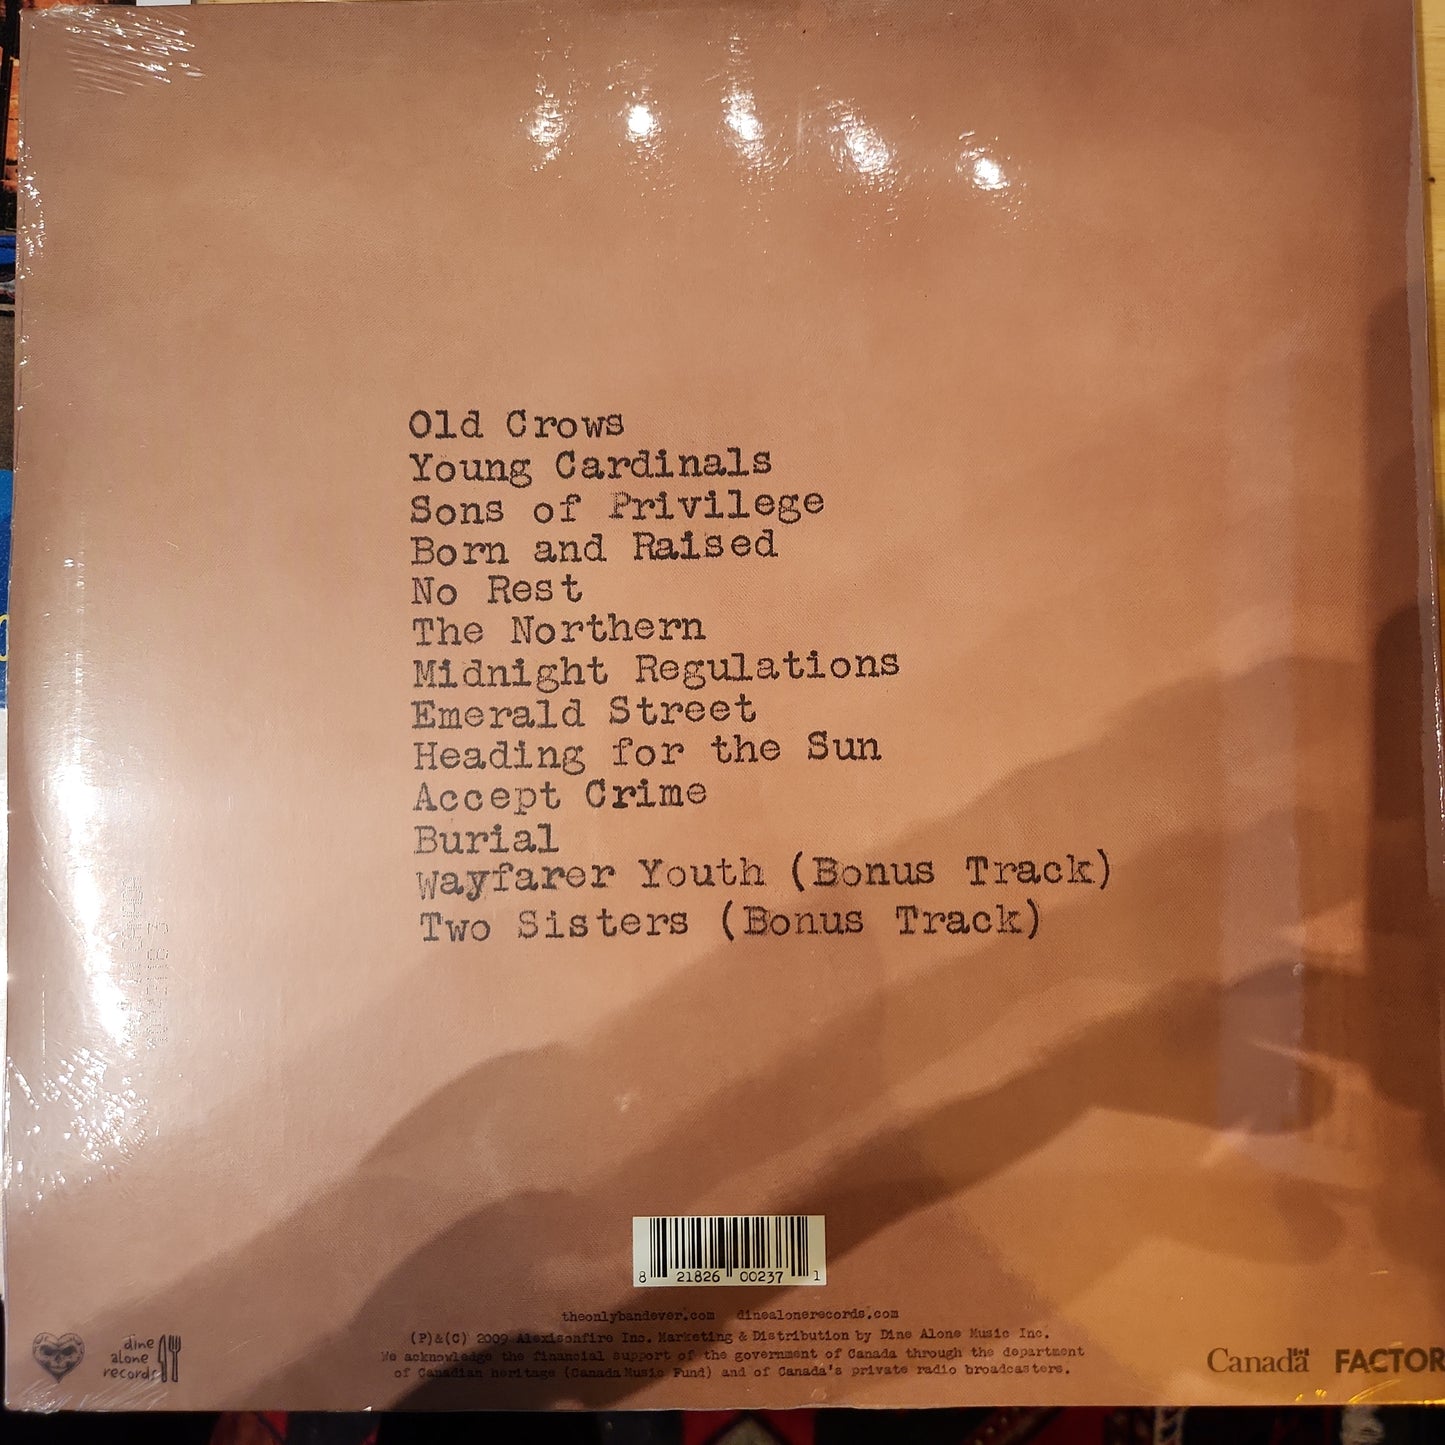 Alexisonfire - Old Crows/ Young Cardinals - Vinyl LP